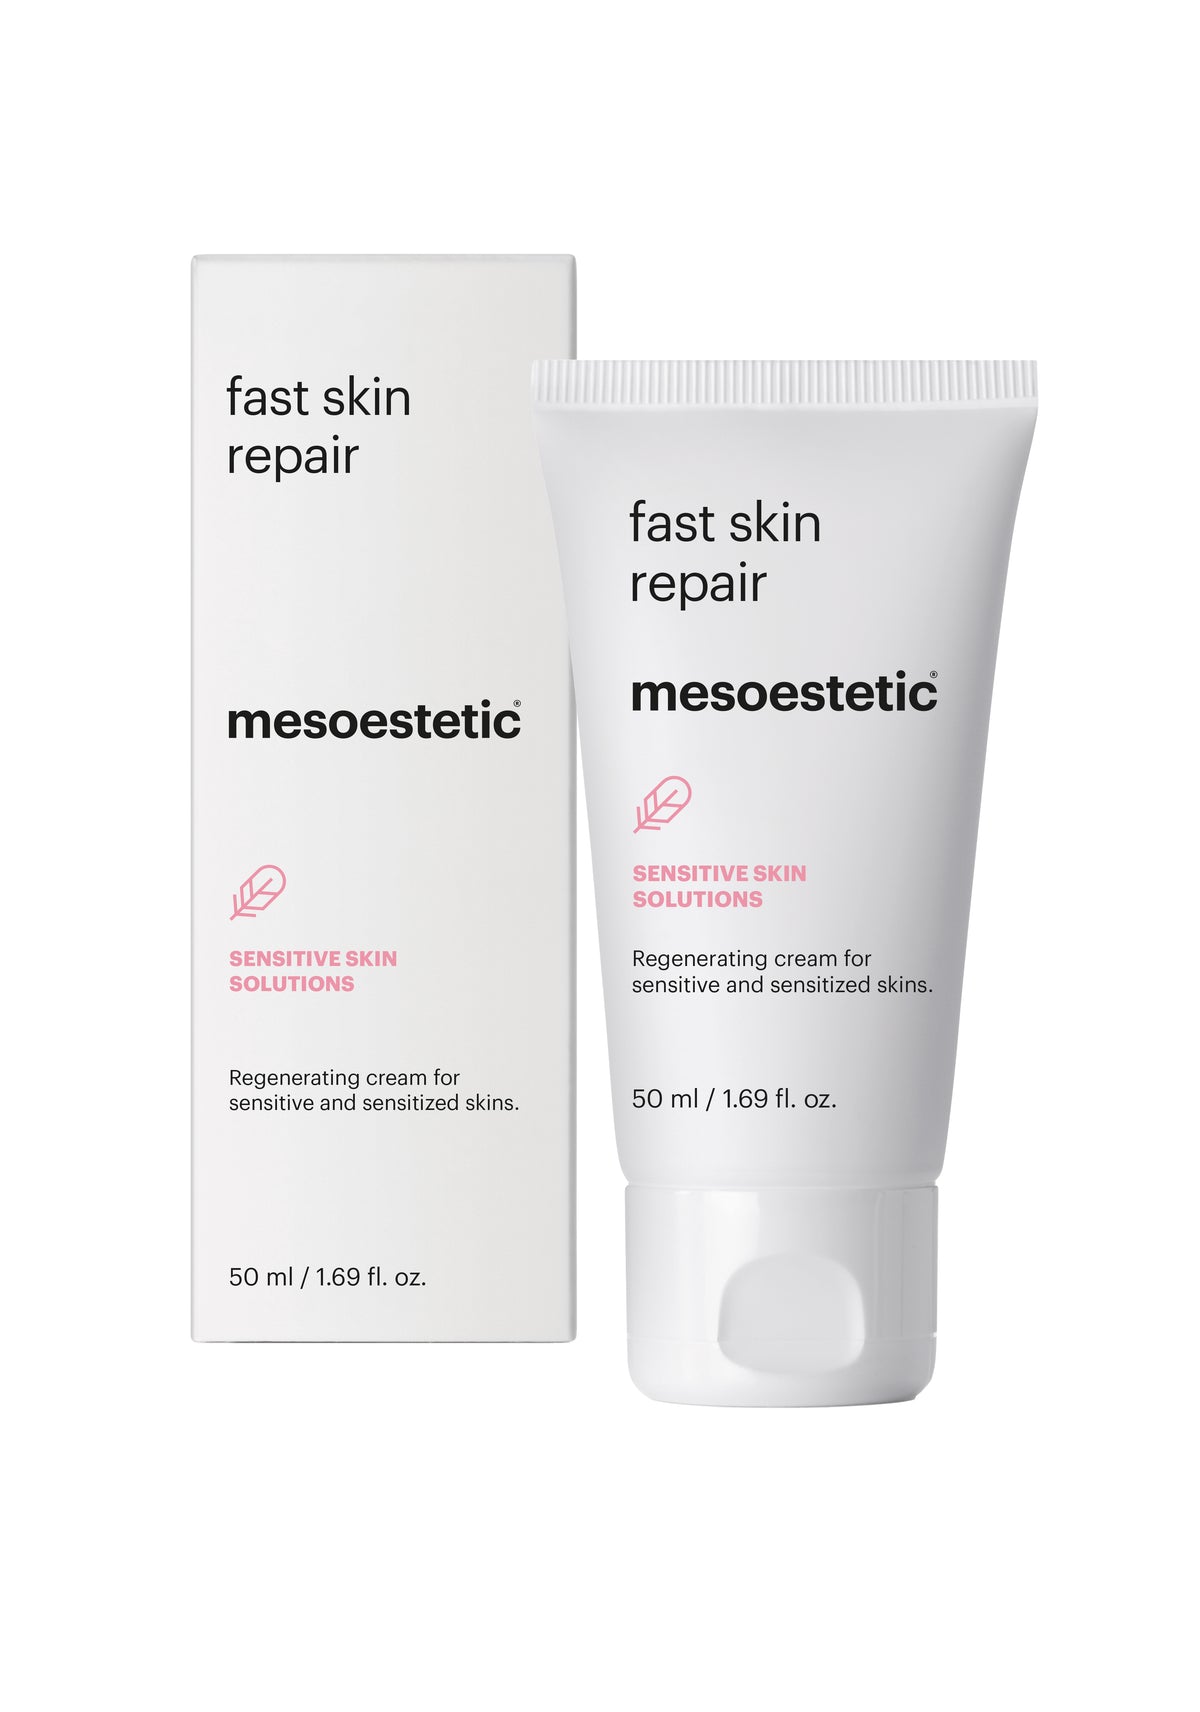 mesoestetic 專業修復抗敏面霜 Post-Procedure Fast Skin Repair